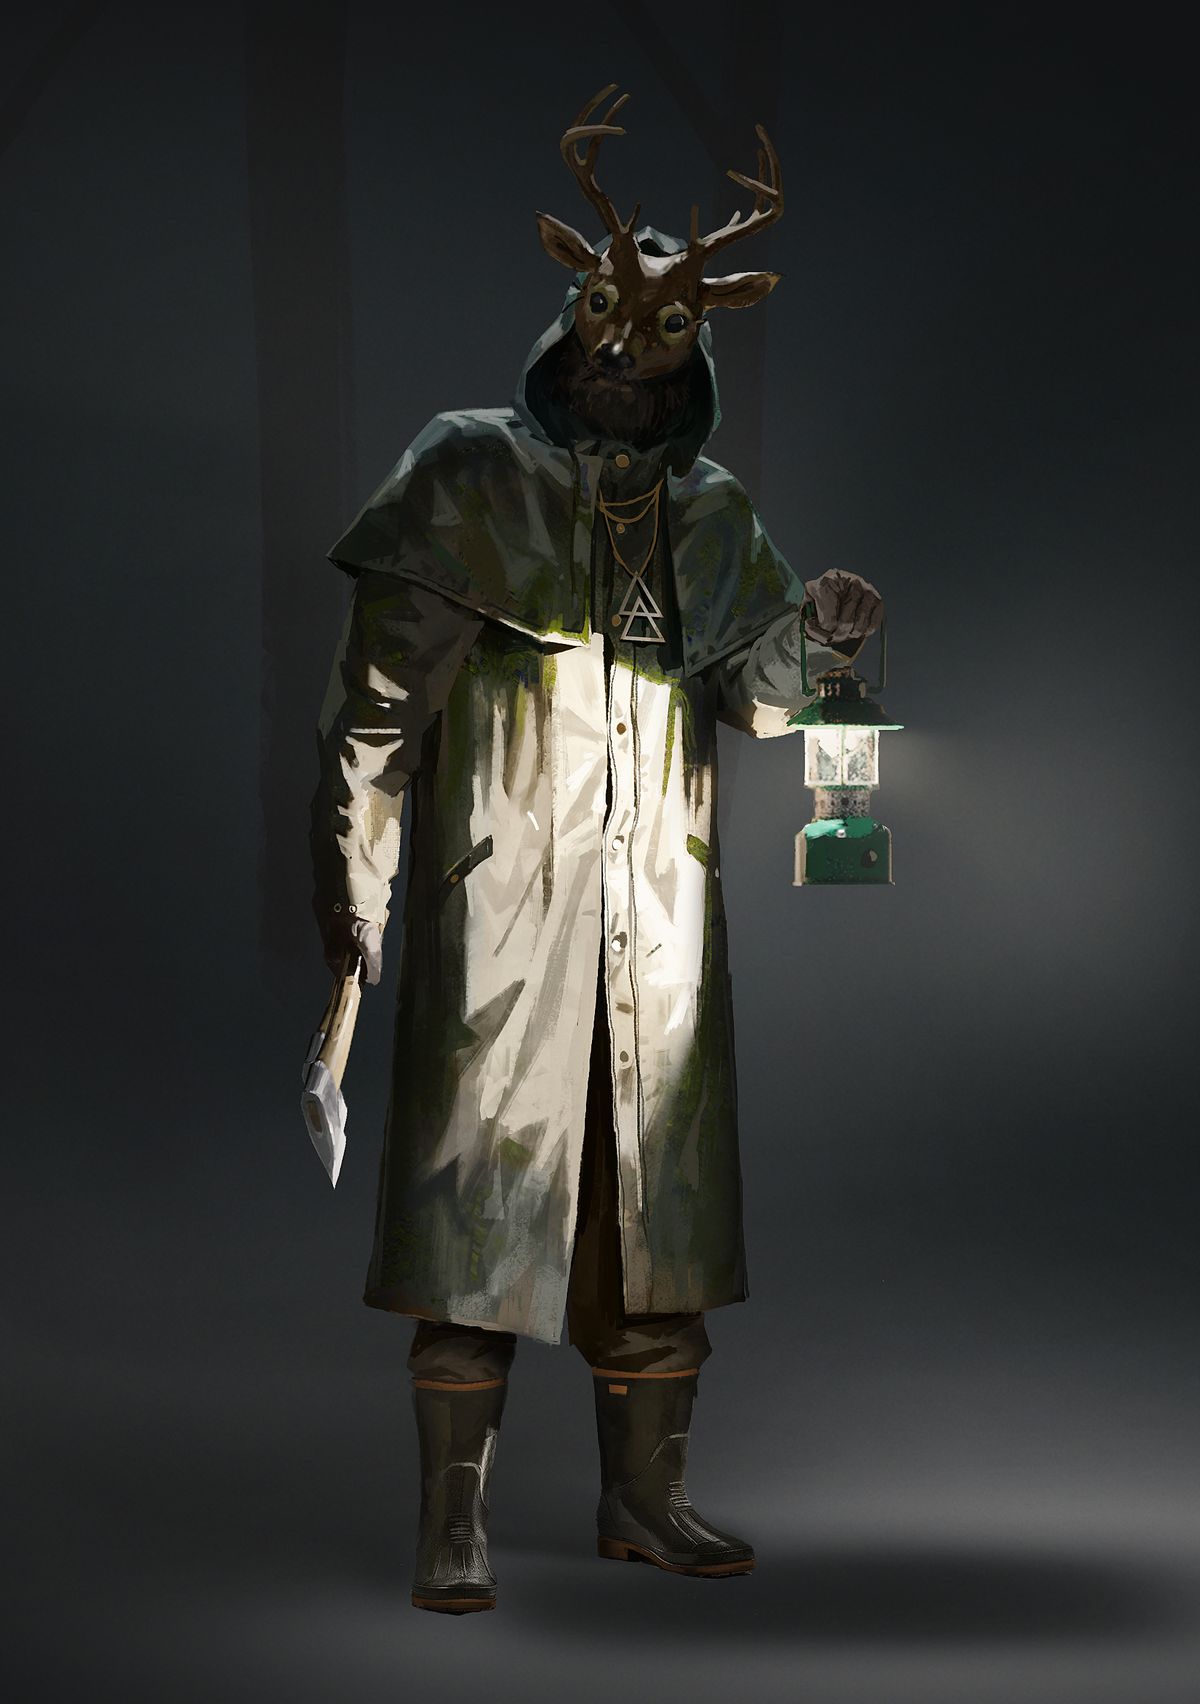 En bild av en sektist i Alan Wake 2. Kultisten är klädd i en solbränd trenchcoat och en kär mask med horn på huvudet.  De håller en yxa i ena handen och en lykta i en annan.